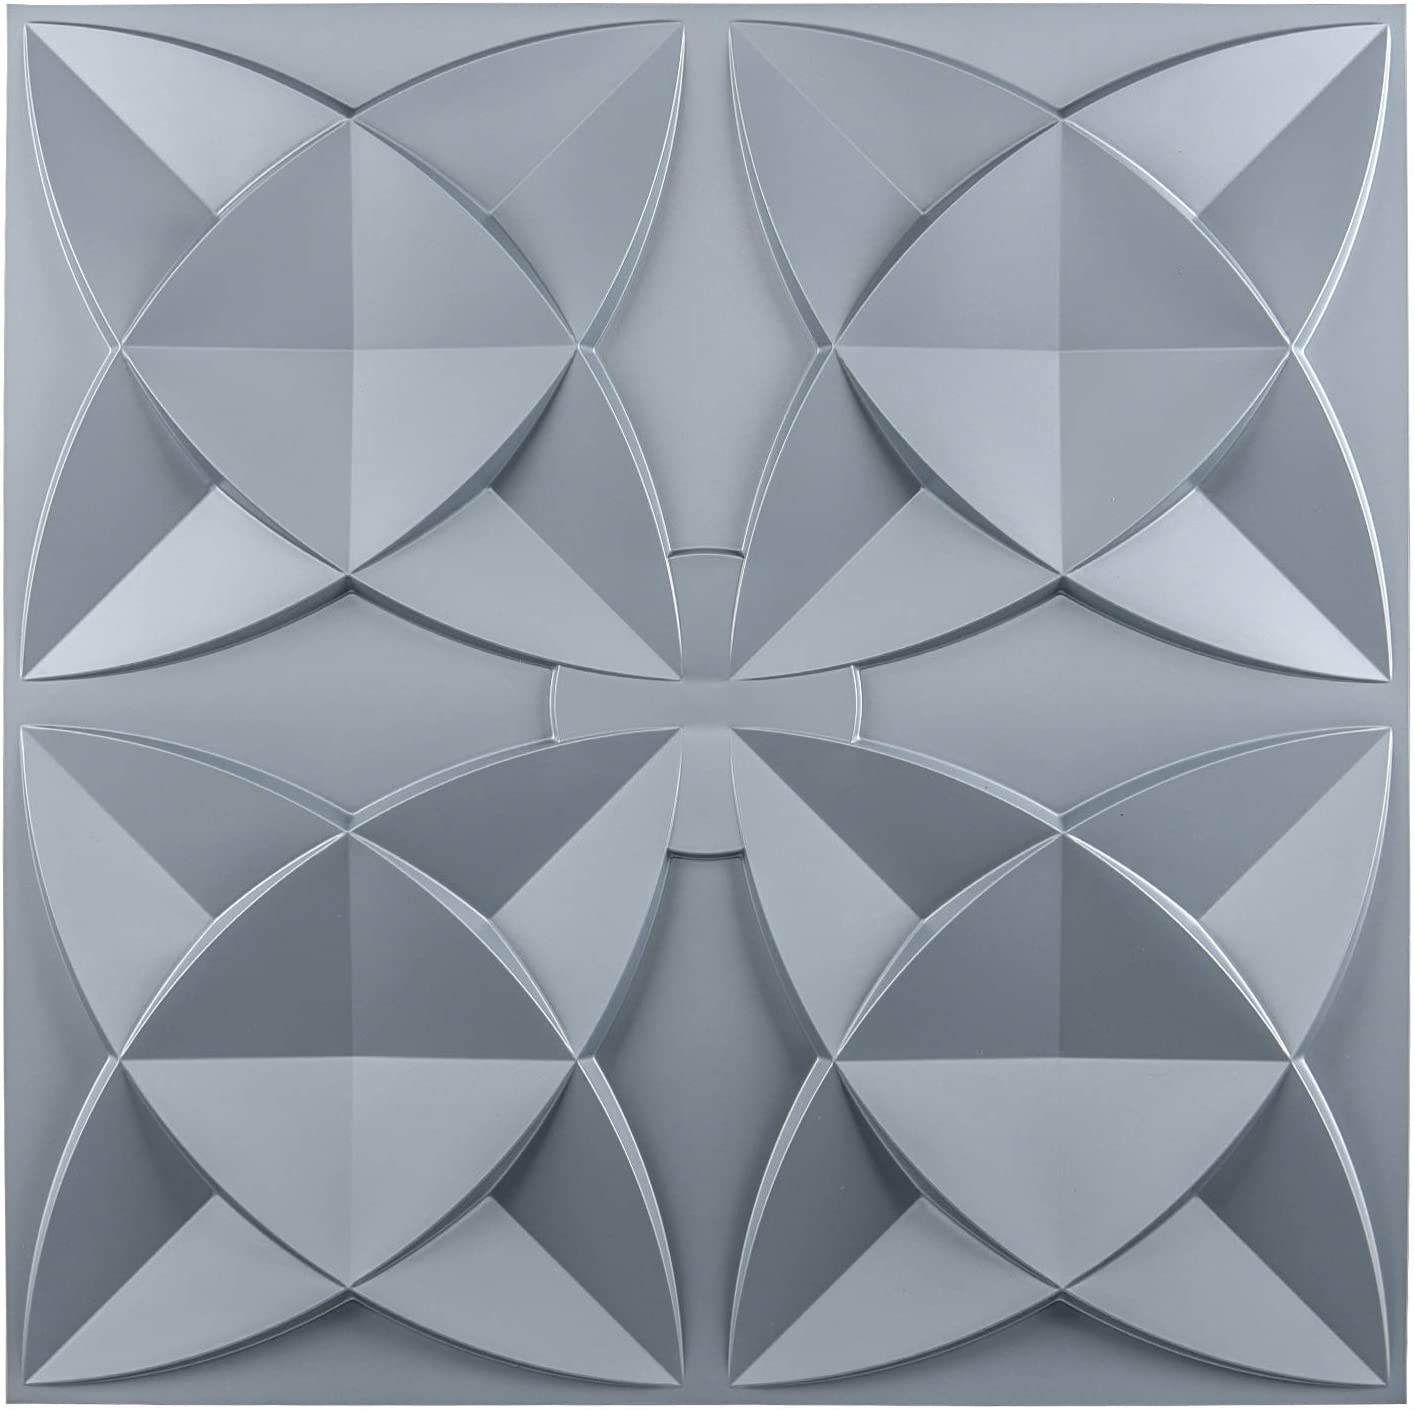 Art3d Drop Ceiling Tiles 2x2, Glue-up Ceiling Panel, Fancy Classic